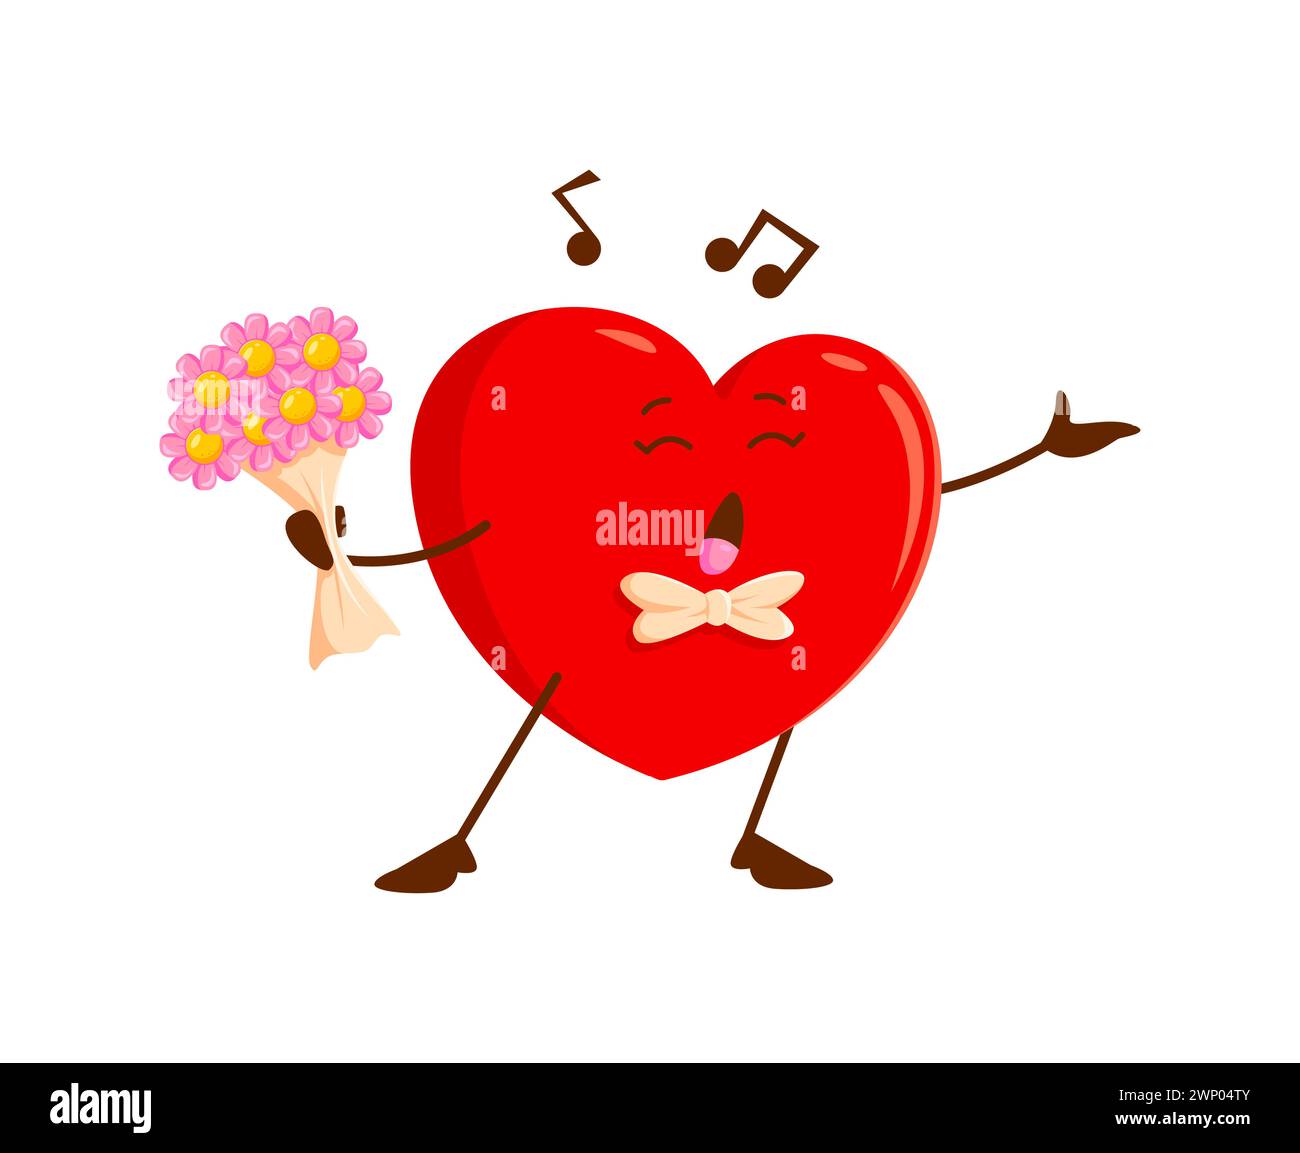 Personnage de Cartoon Love Heart chantant une chanson à la Saint-Valentin. Personnage de cœur passionné de vecteur isolé, effectue joyeusement la sérénade avec les yeux fermés et le bouquet de fleurs à la main, des notes flottant autour Illustration de Vecteur